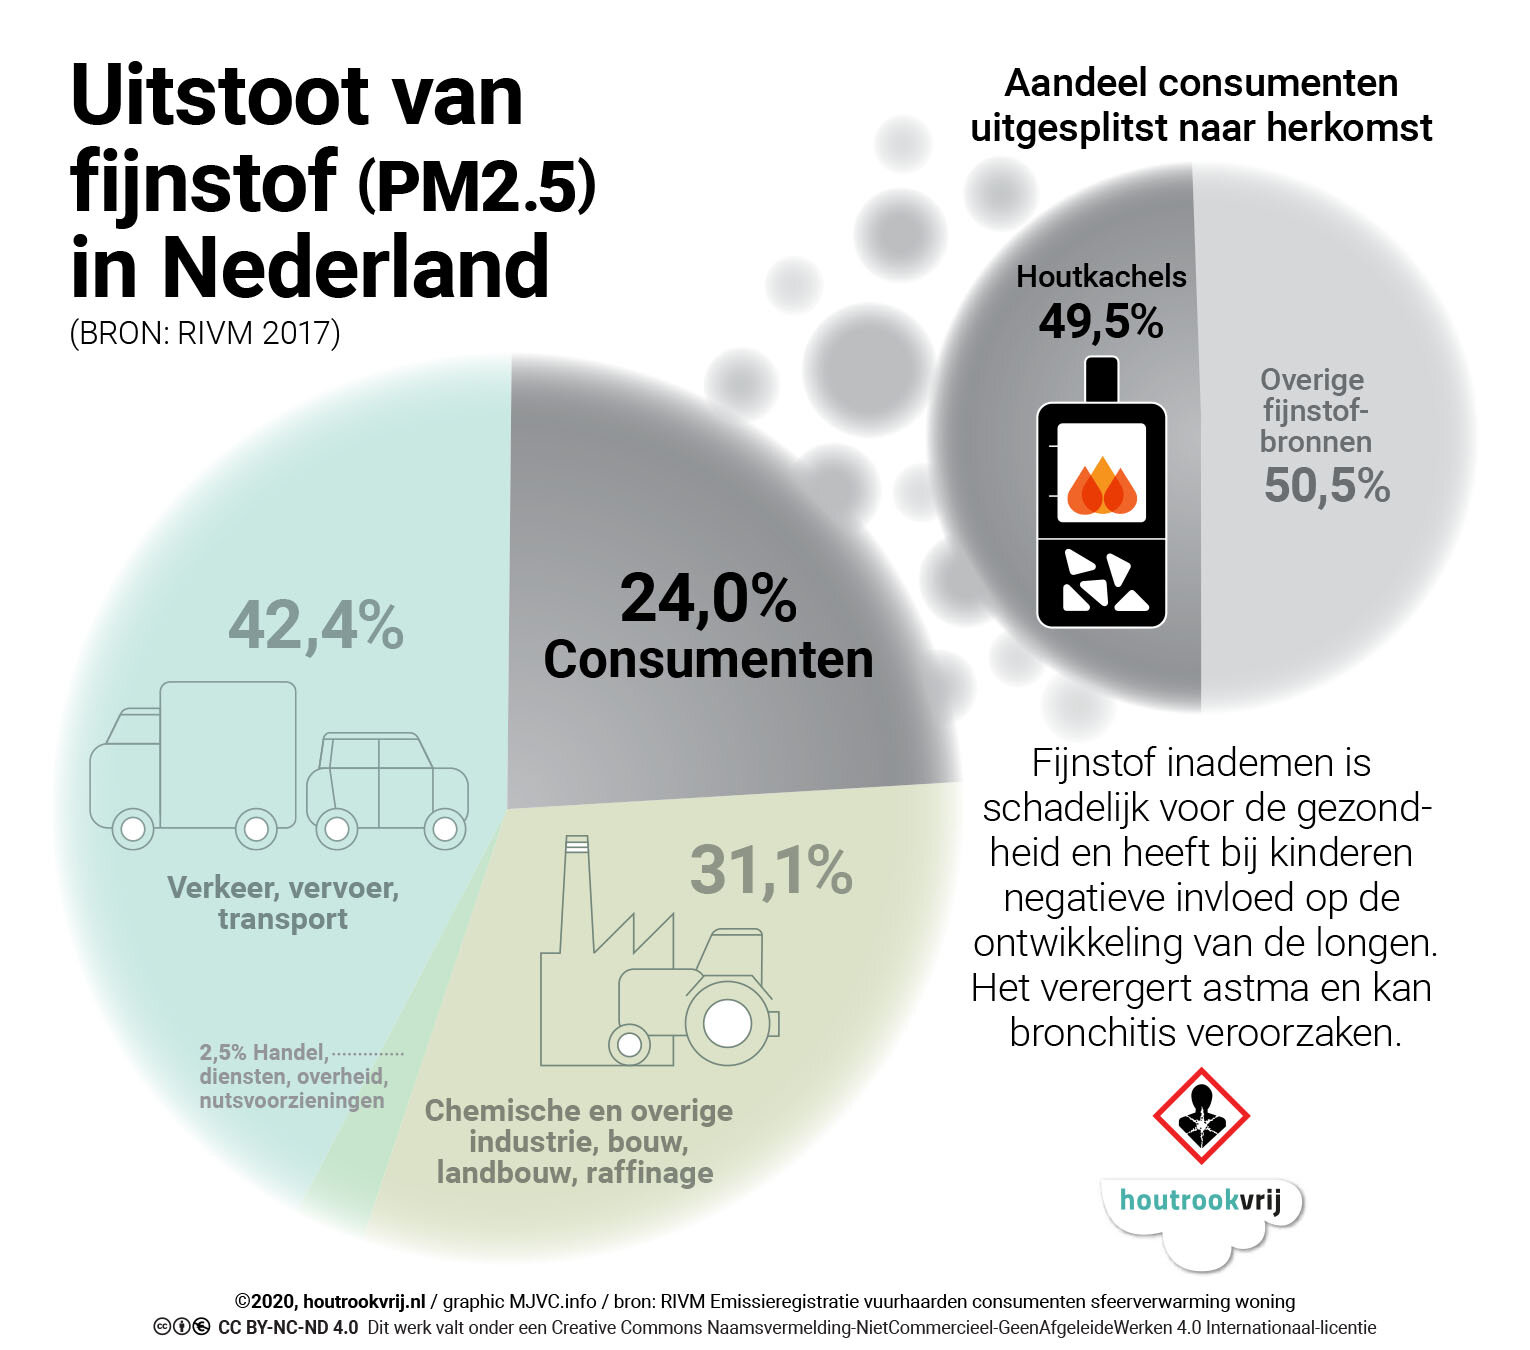 NL uitgesplitst aandeel consumenten FIJNSTOF (7-0220) 1530x1350.jpg